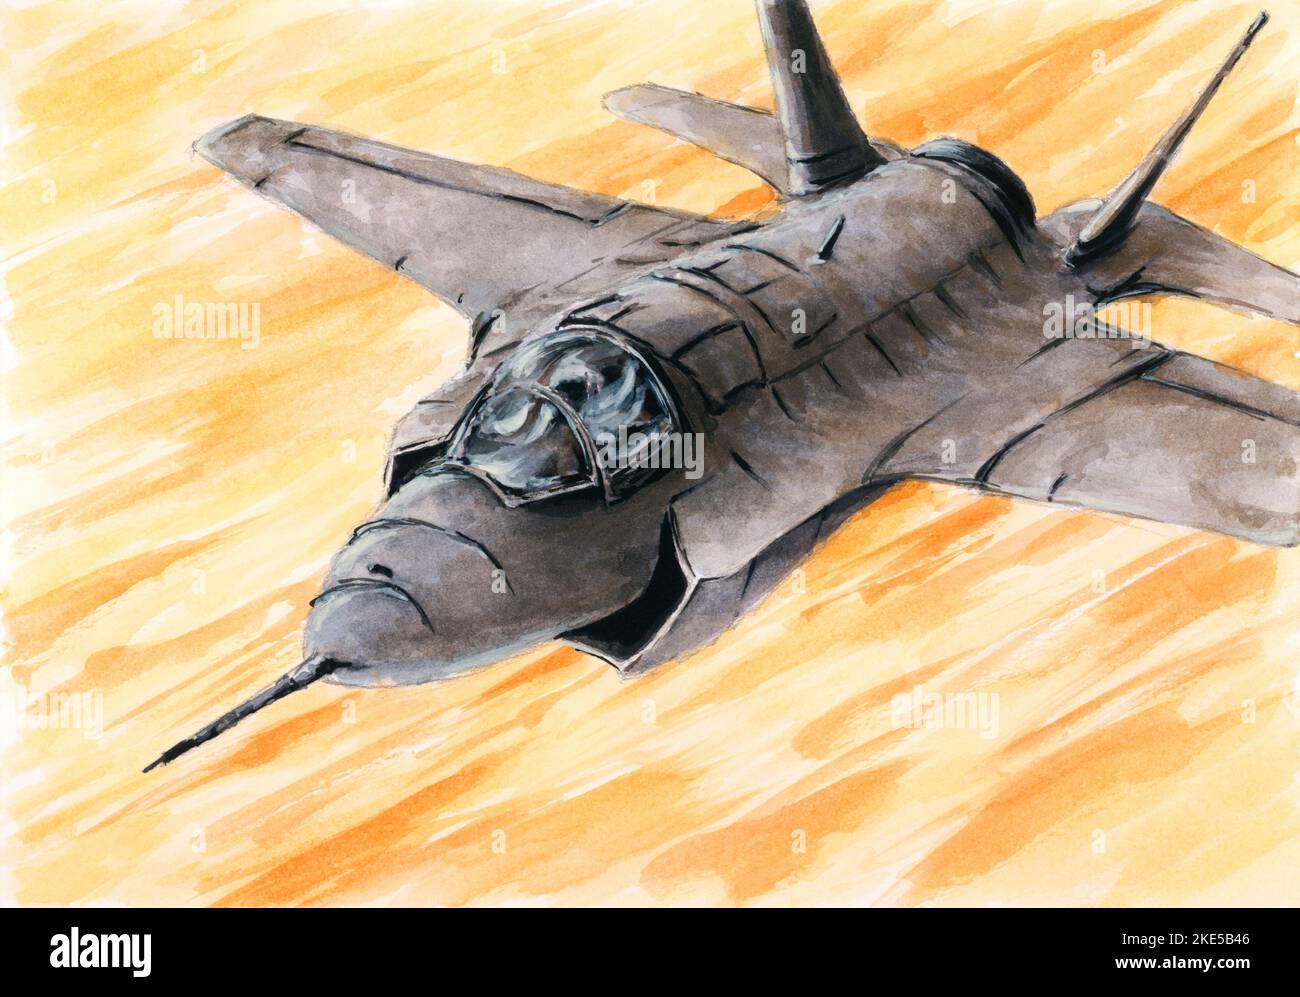 Moderno jet fighter in azione. Acquerello su carta. Foto Stock